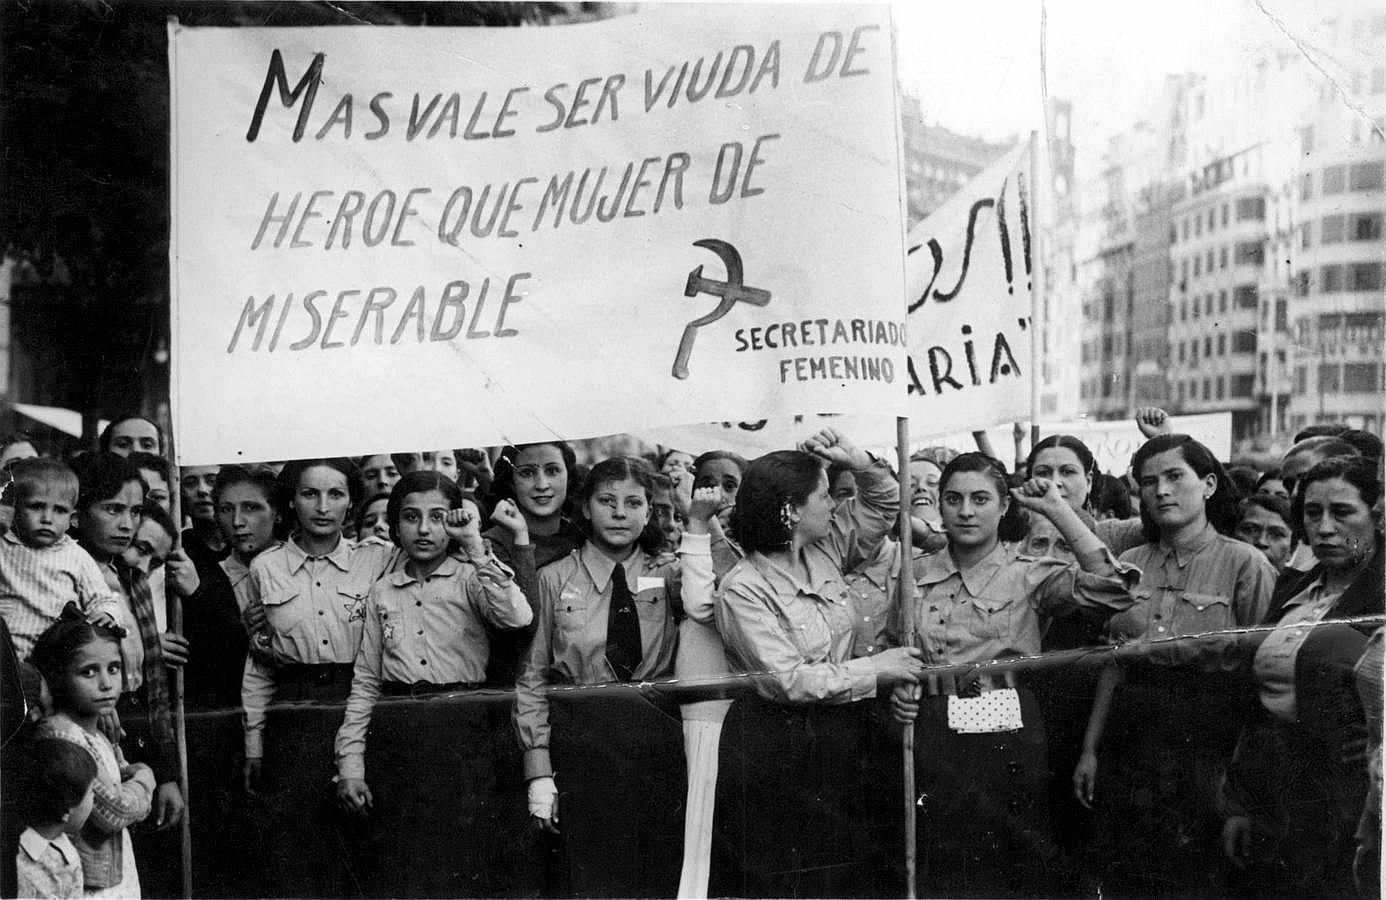 Dones del Secretariat Femení del POUM amb una pancarta on es pot llegir "Más vale ser viuda de héroe que esposa de cobarde". Font: Burbuja